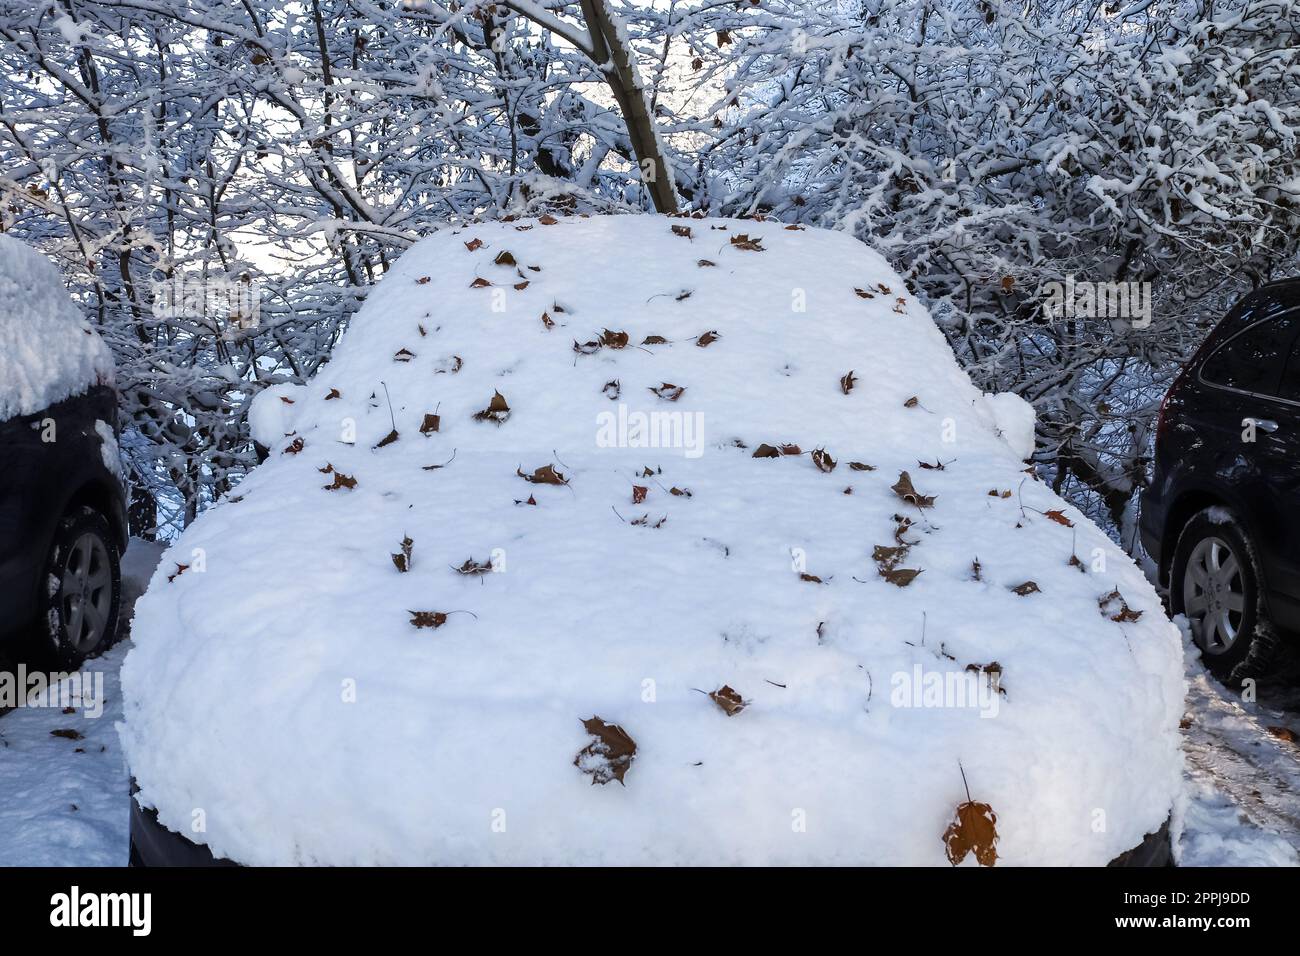 https://c8.alamy.com/compde/2ppj9dd/ein-auto-das-nach-einem-schneesturm-komplett-mit-dickem-schnee-bedeckt-ist-2ppj9dd.jpg